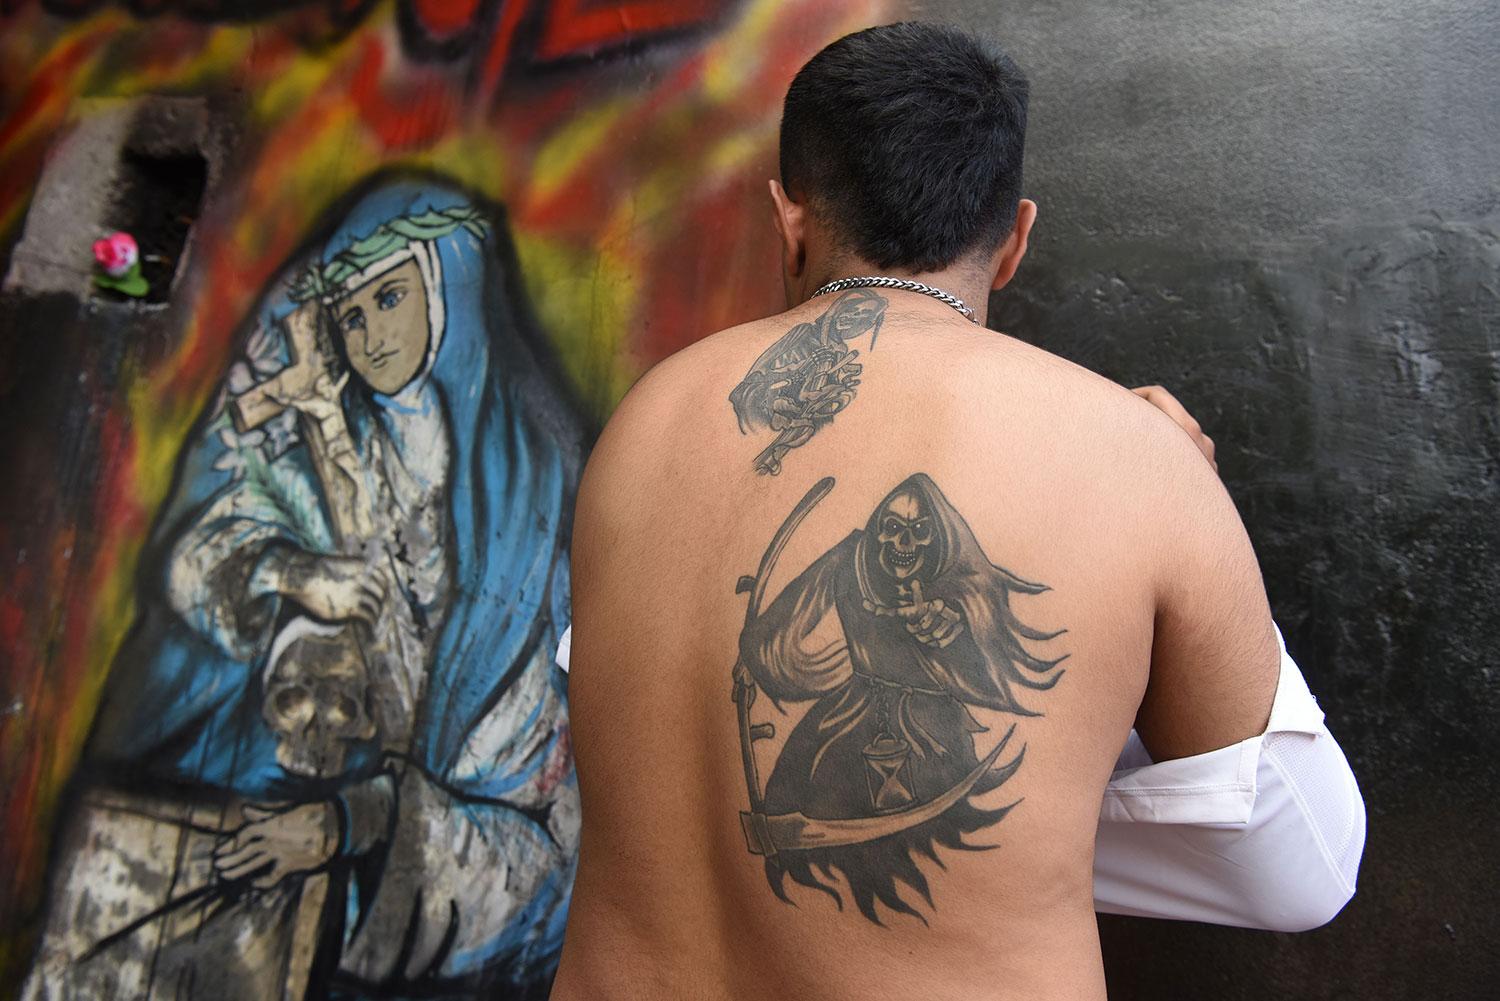 EN LA PIEL. Los tatuajes de San La Muerte predominante entre sus seguidores. LA GACETA / DIEGO ARÁOZ